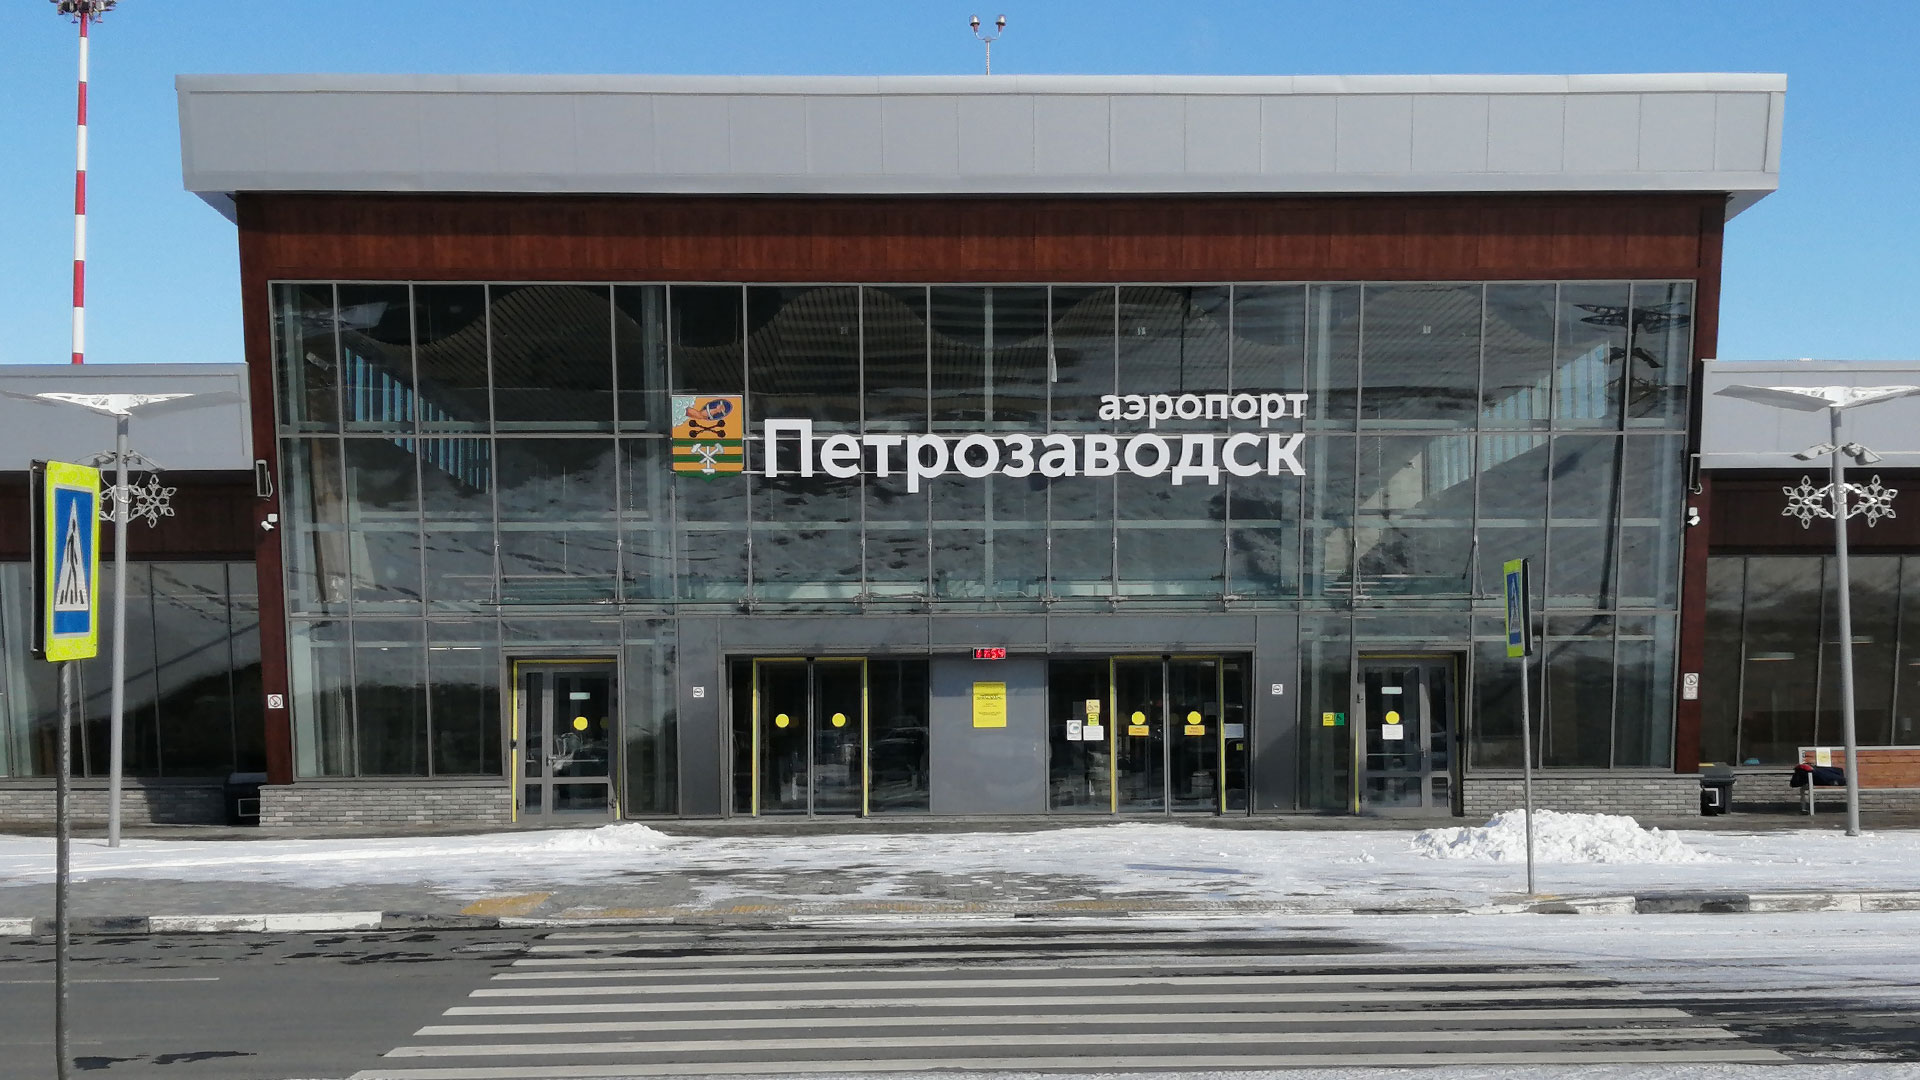 Вход в здание с надписью аэропорт Петрозаводск